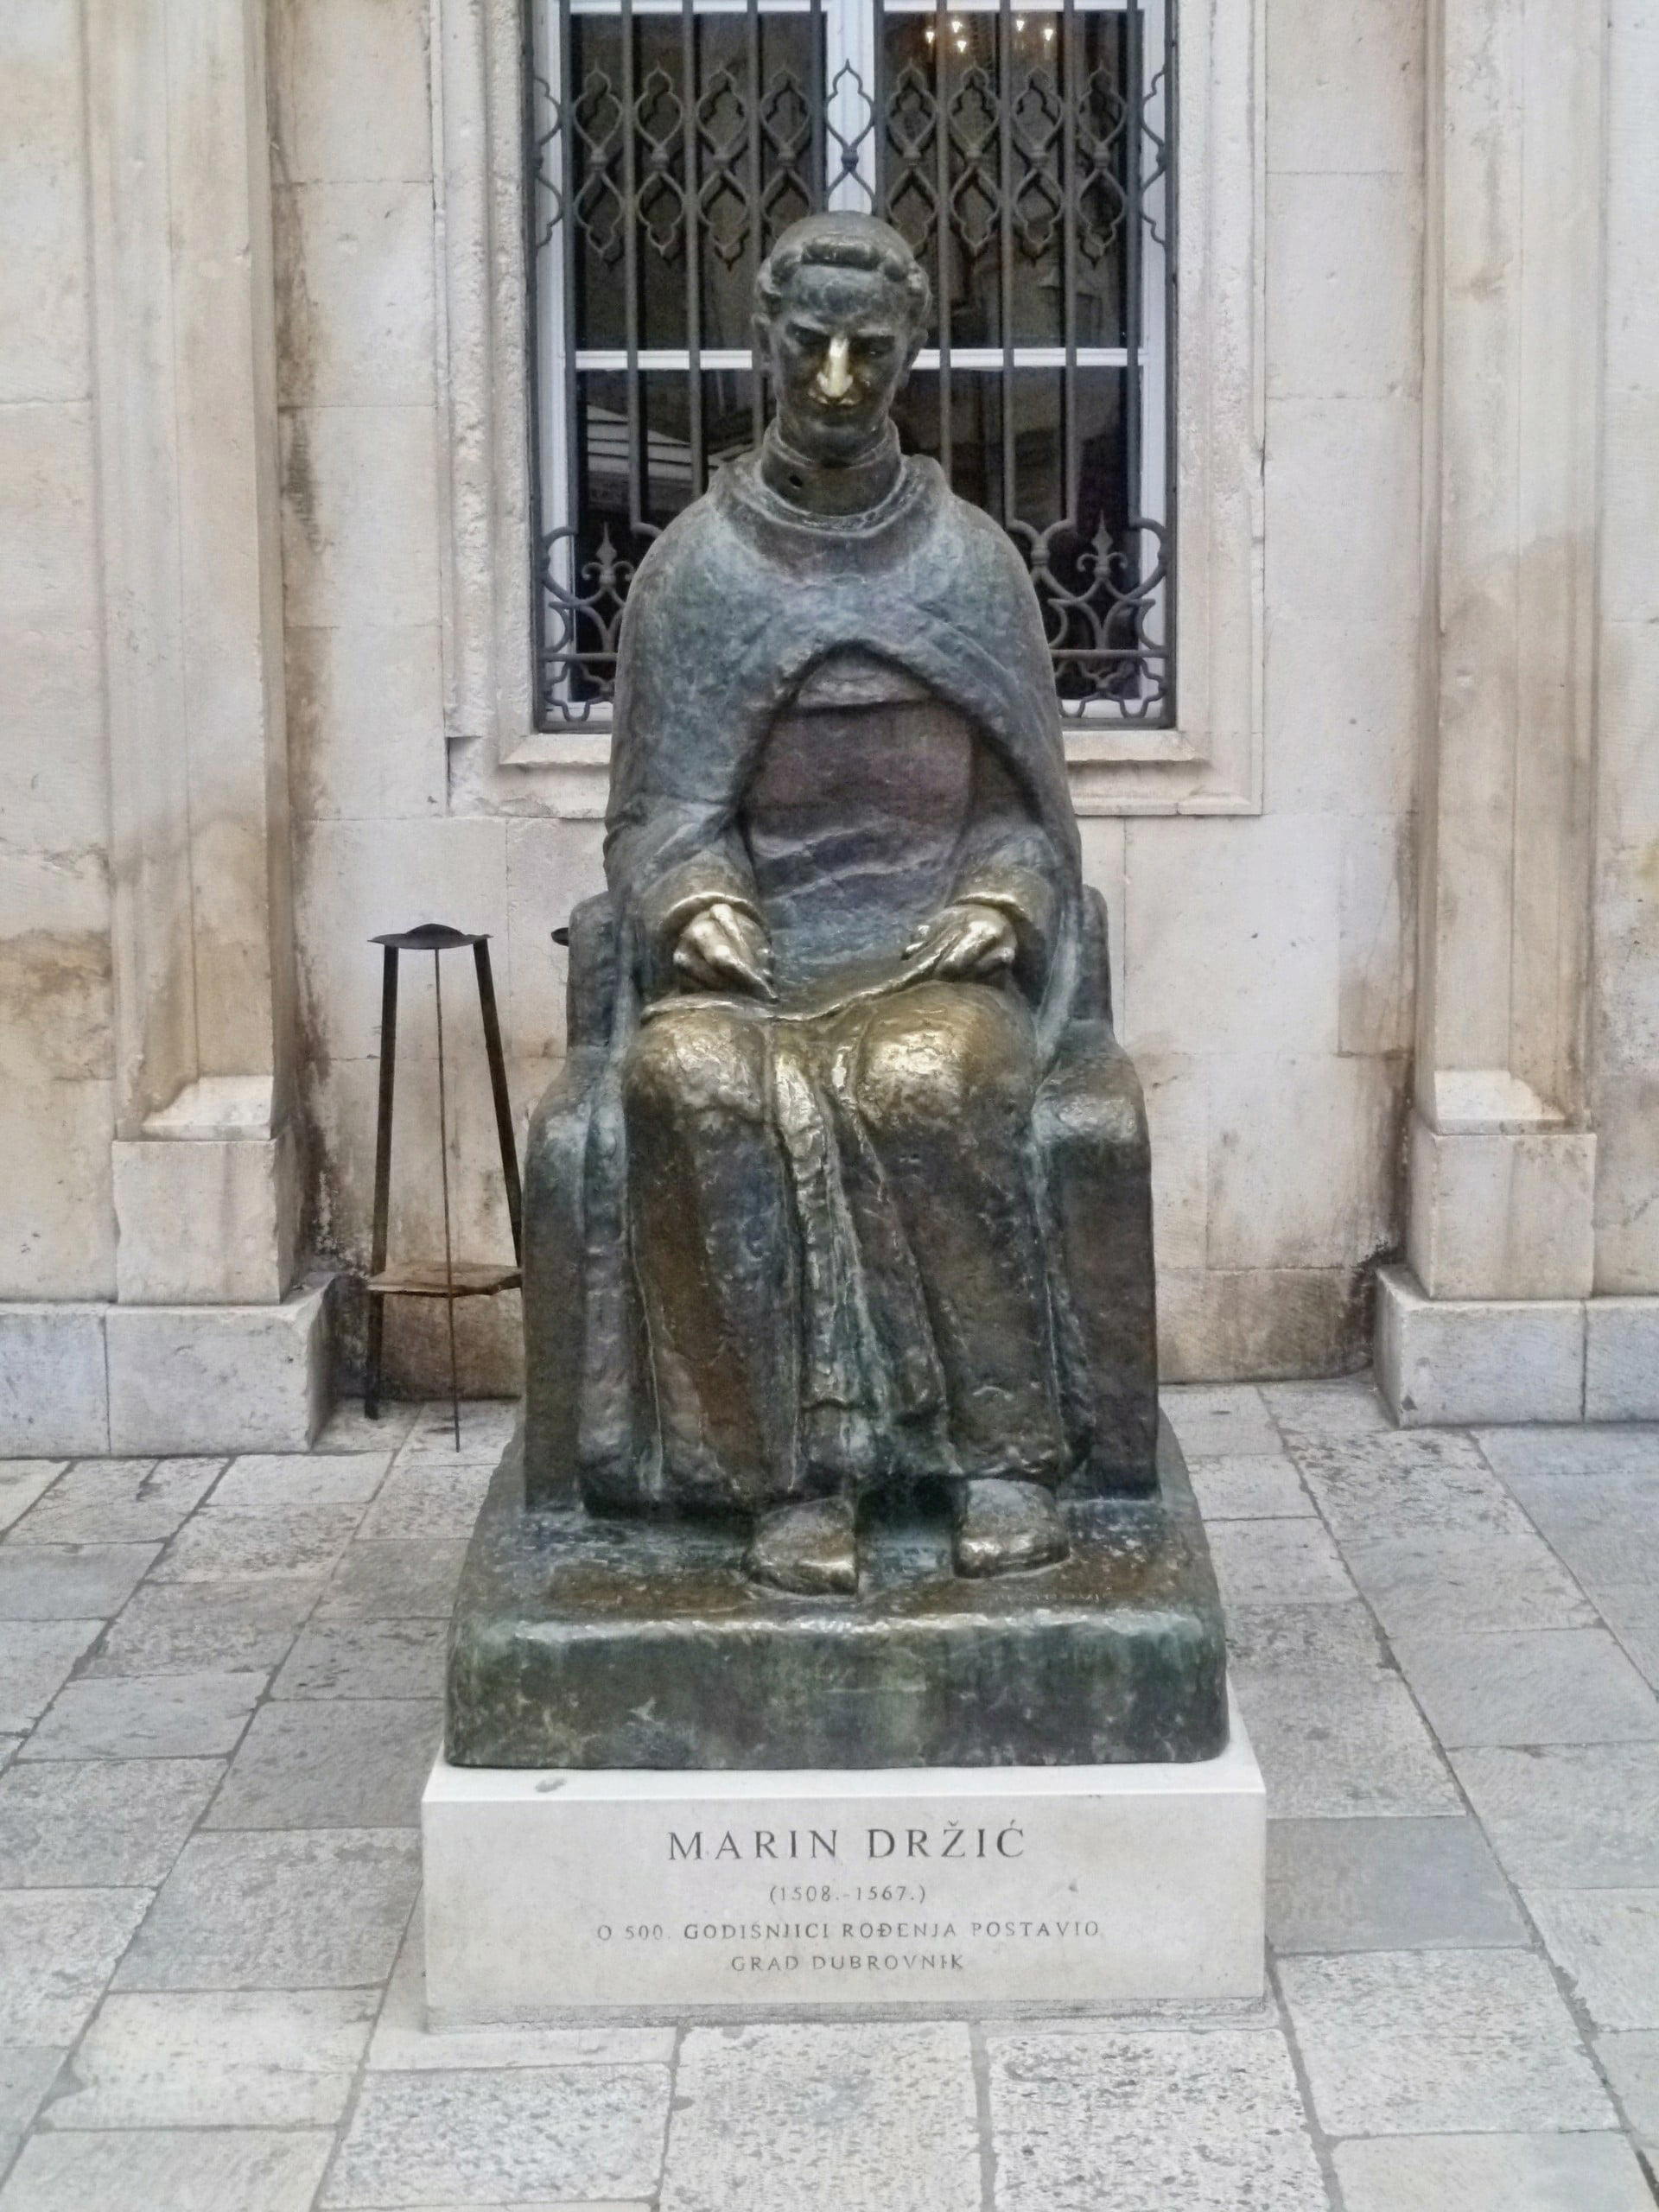 Marin Držić Monument